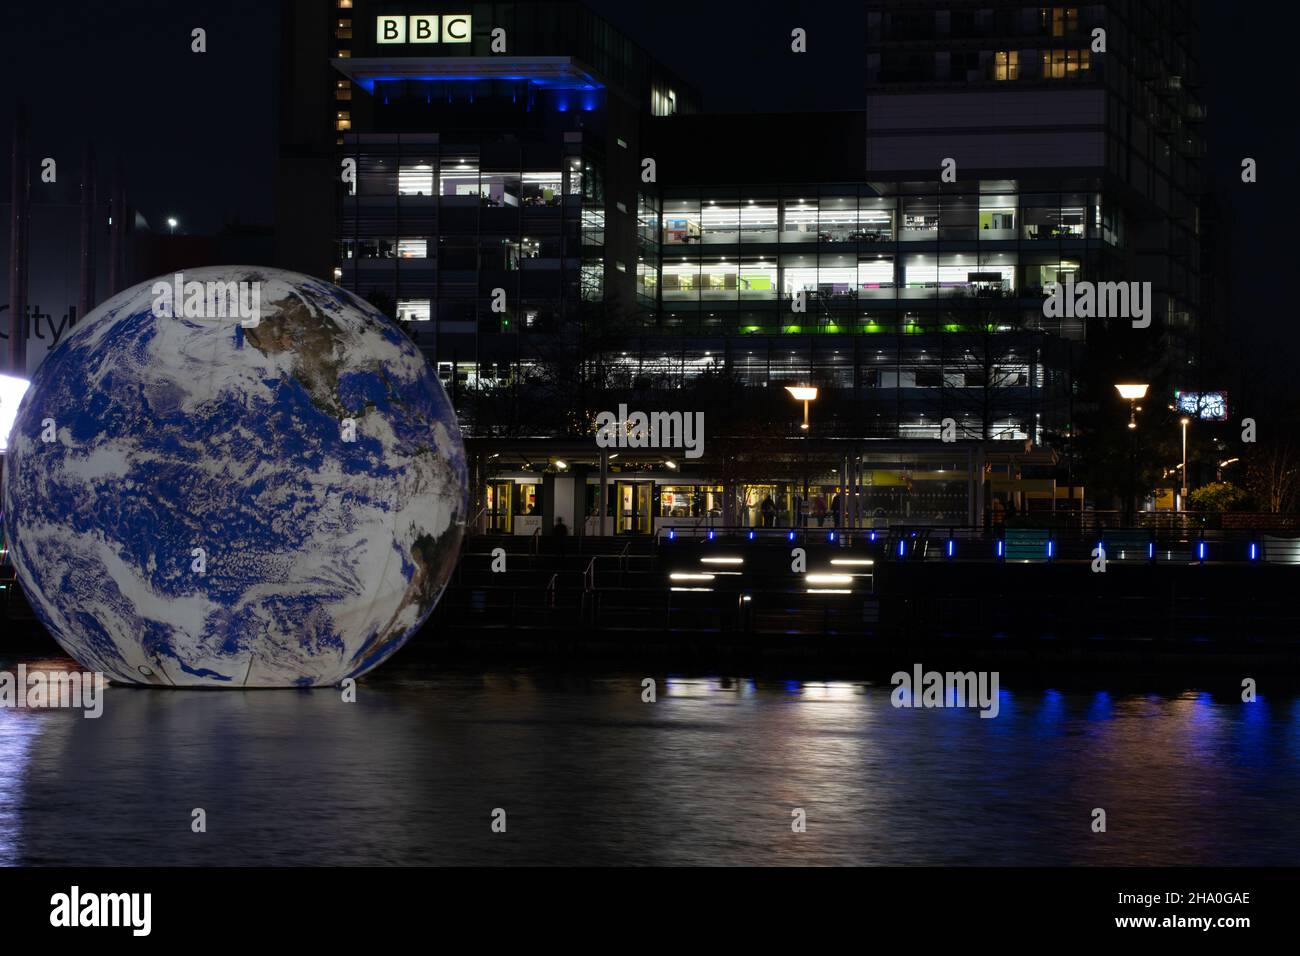 Media City Lightwaves Event mit Floating Globe Installation im Salford Quays BBC Gebäude mit Metrolink Straßenbahn. Langzeitbelichtung. Manchester, Großbritannien Stockfoto